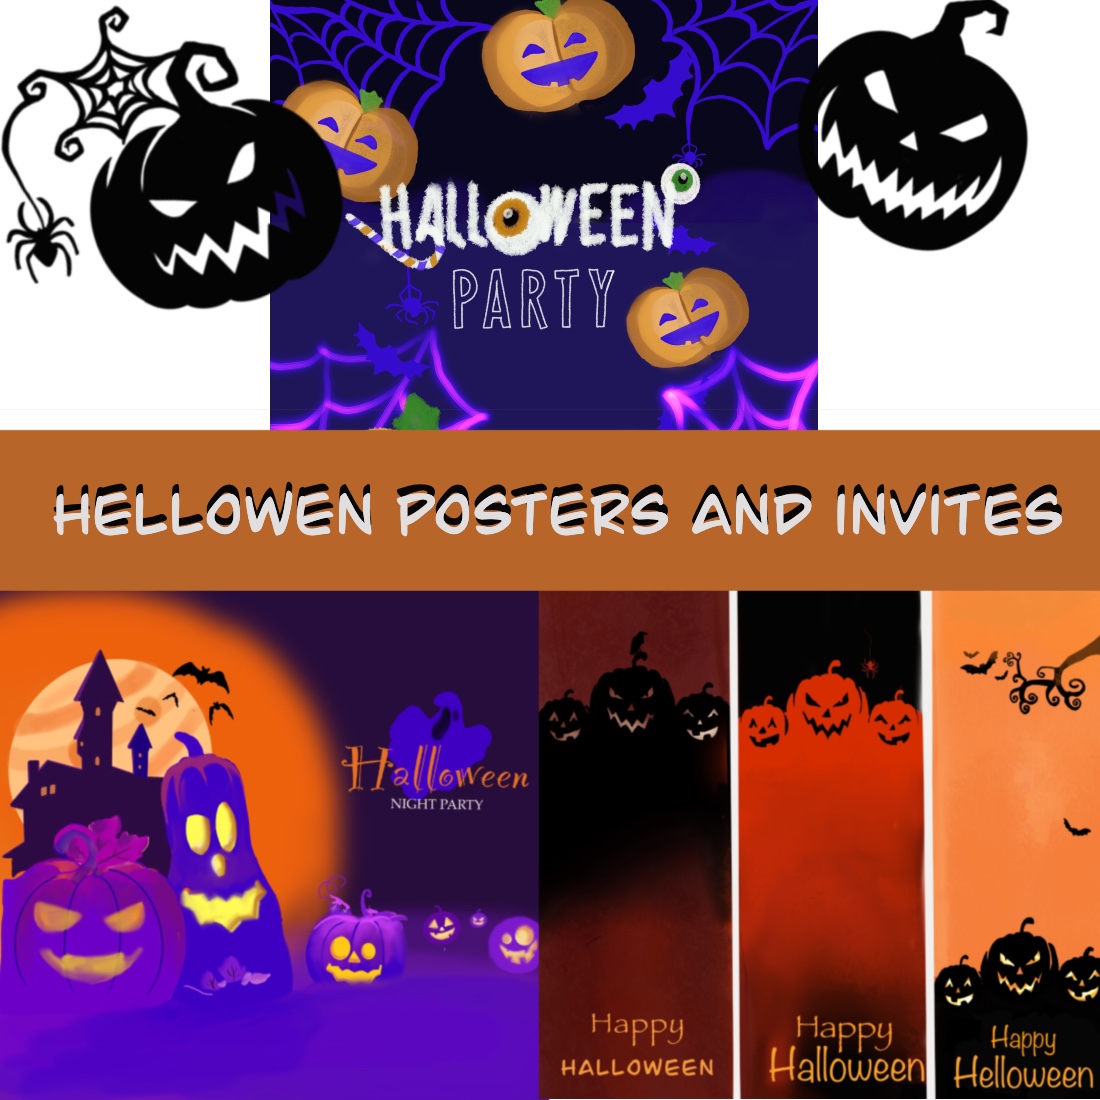 Постеры, приглашения, тексты для Helloween preview image.